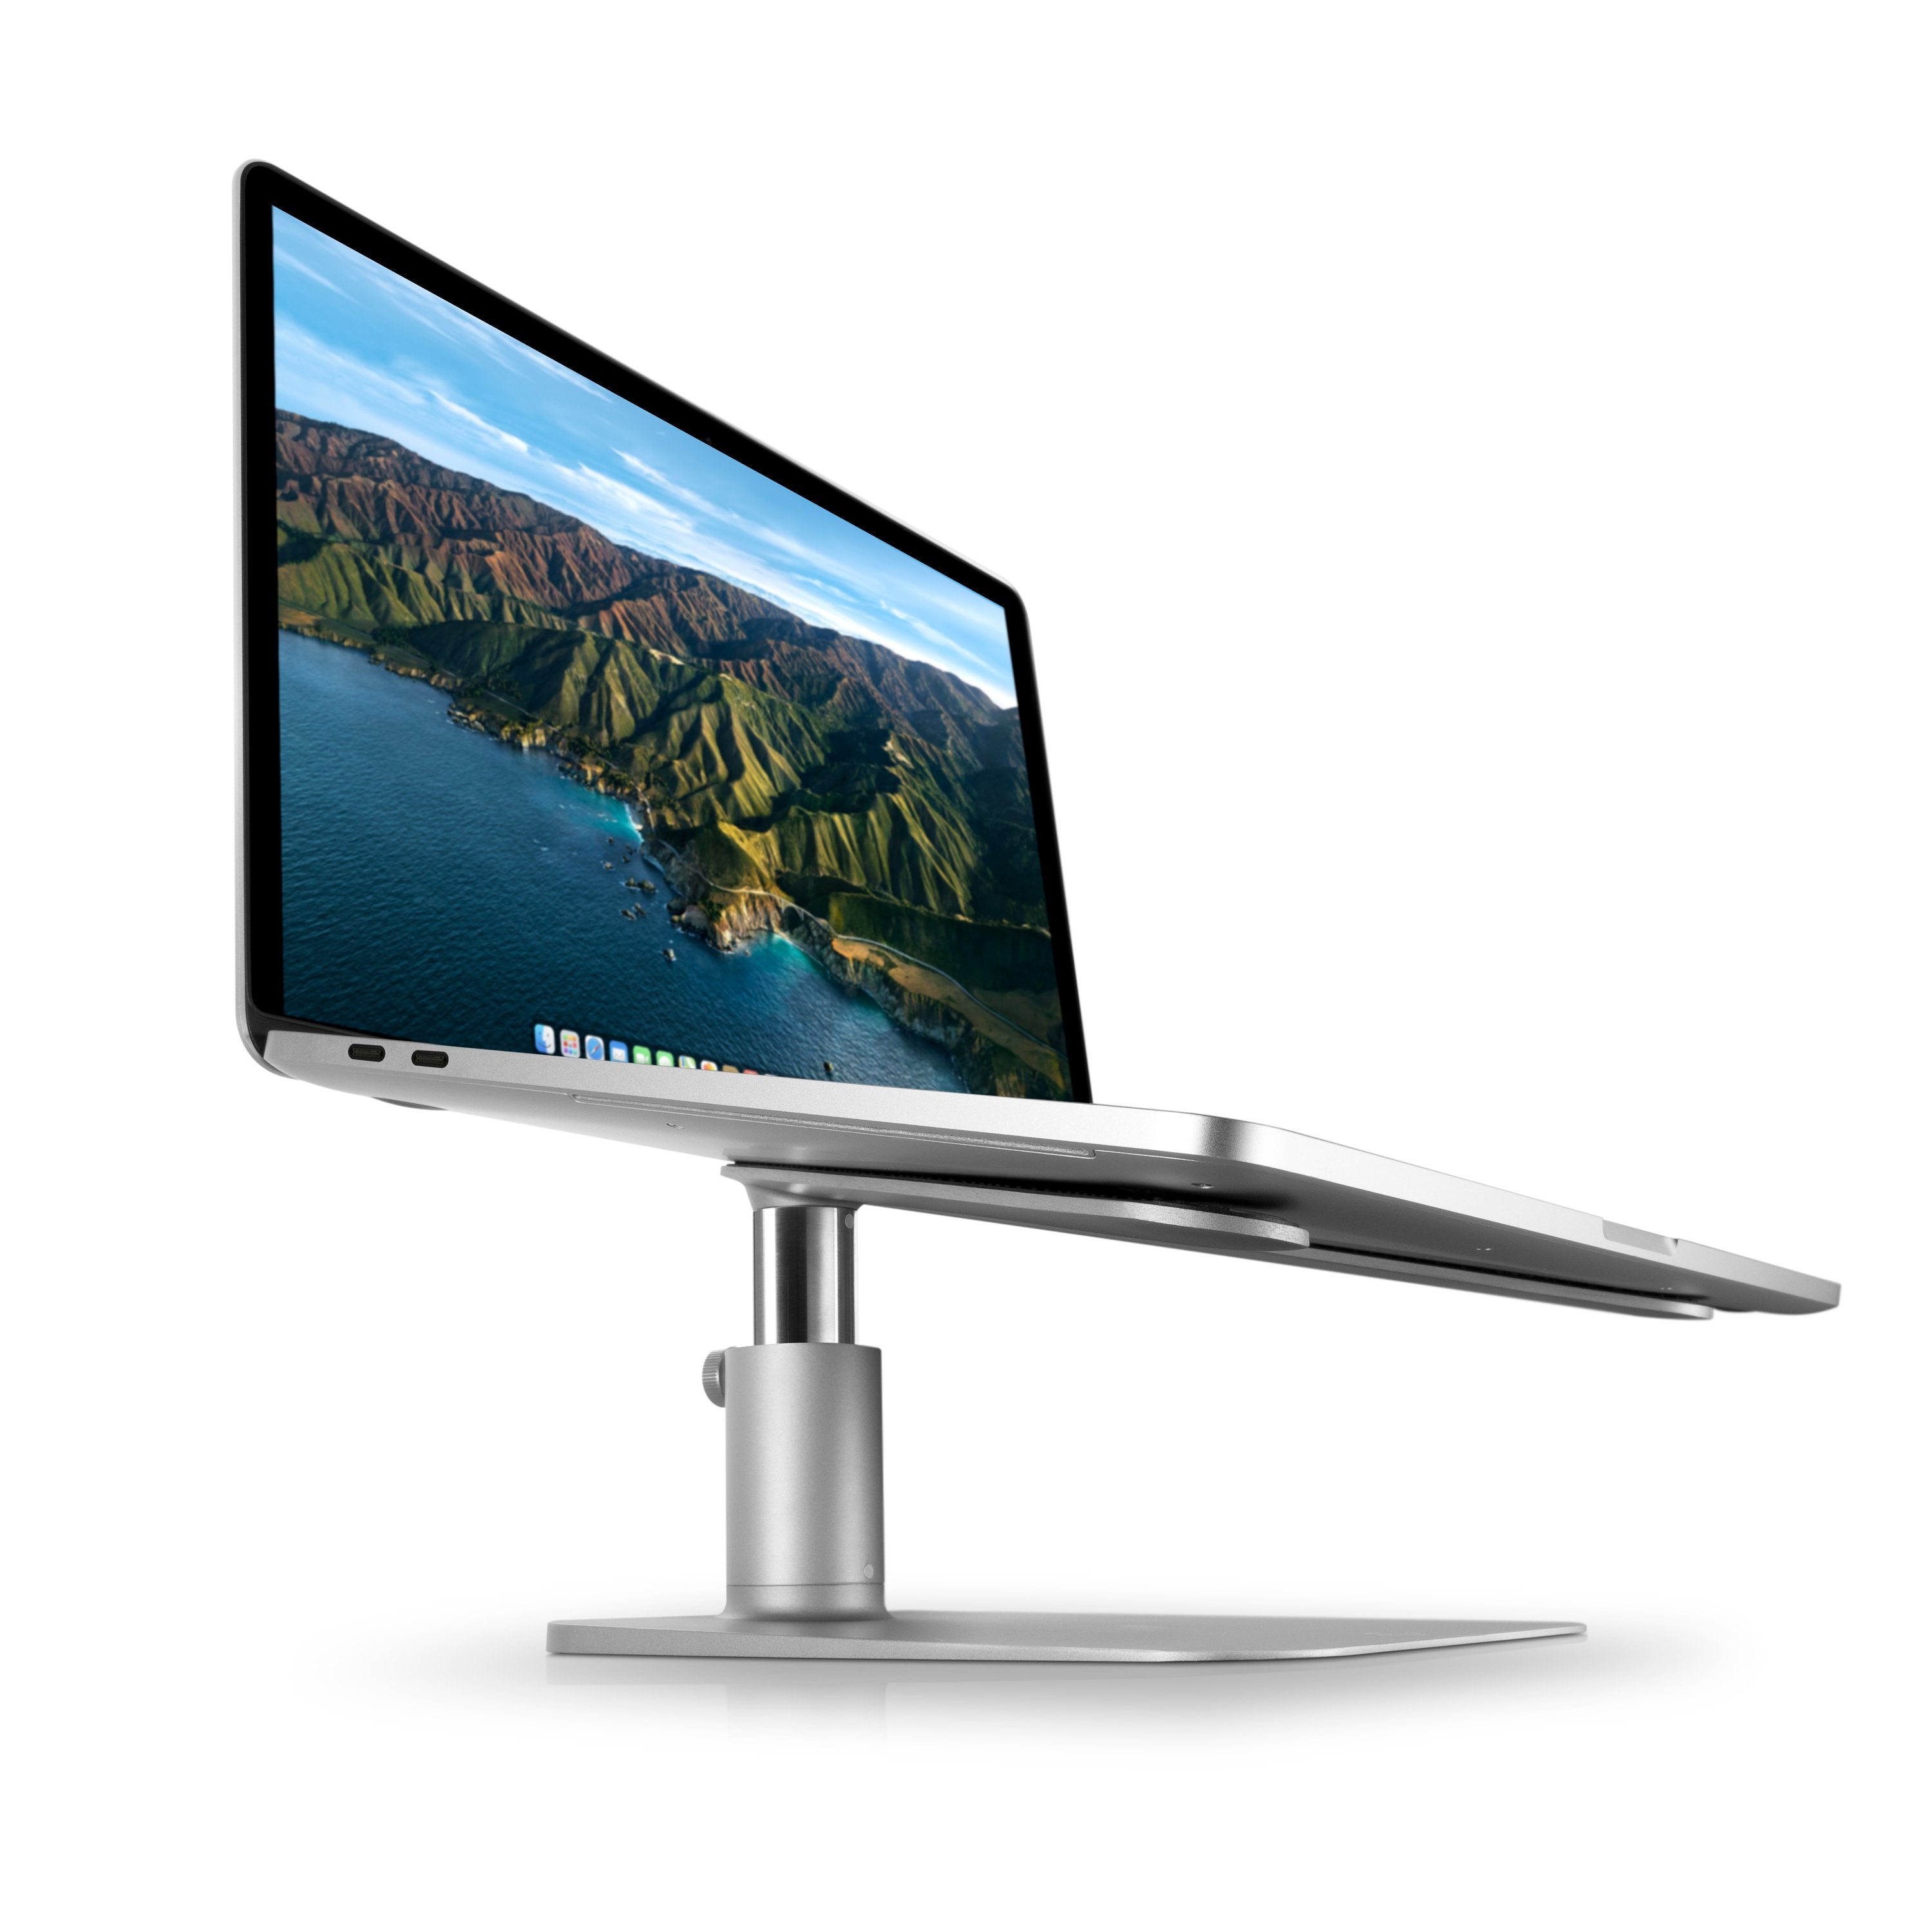 HiRise  Height-adjustable desktop stand for MacBook & laptops